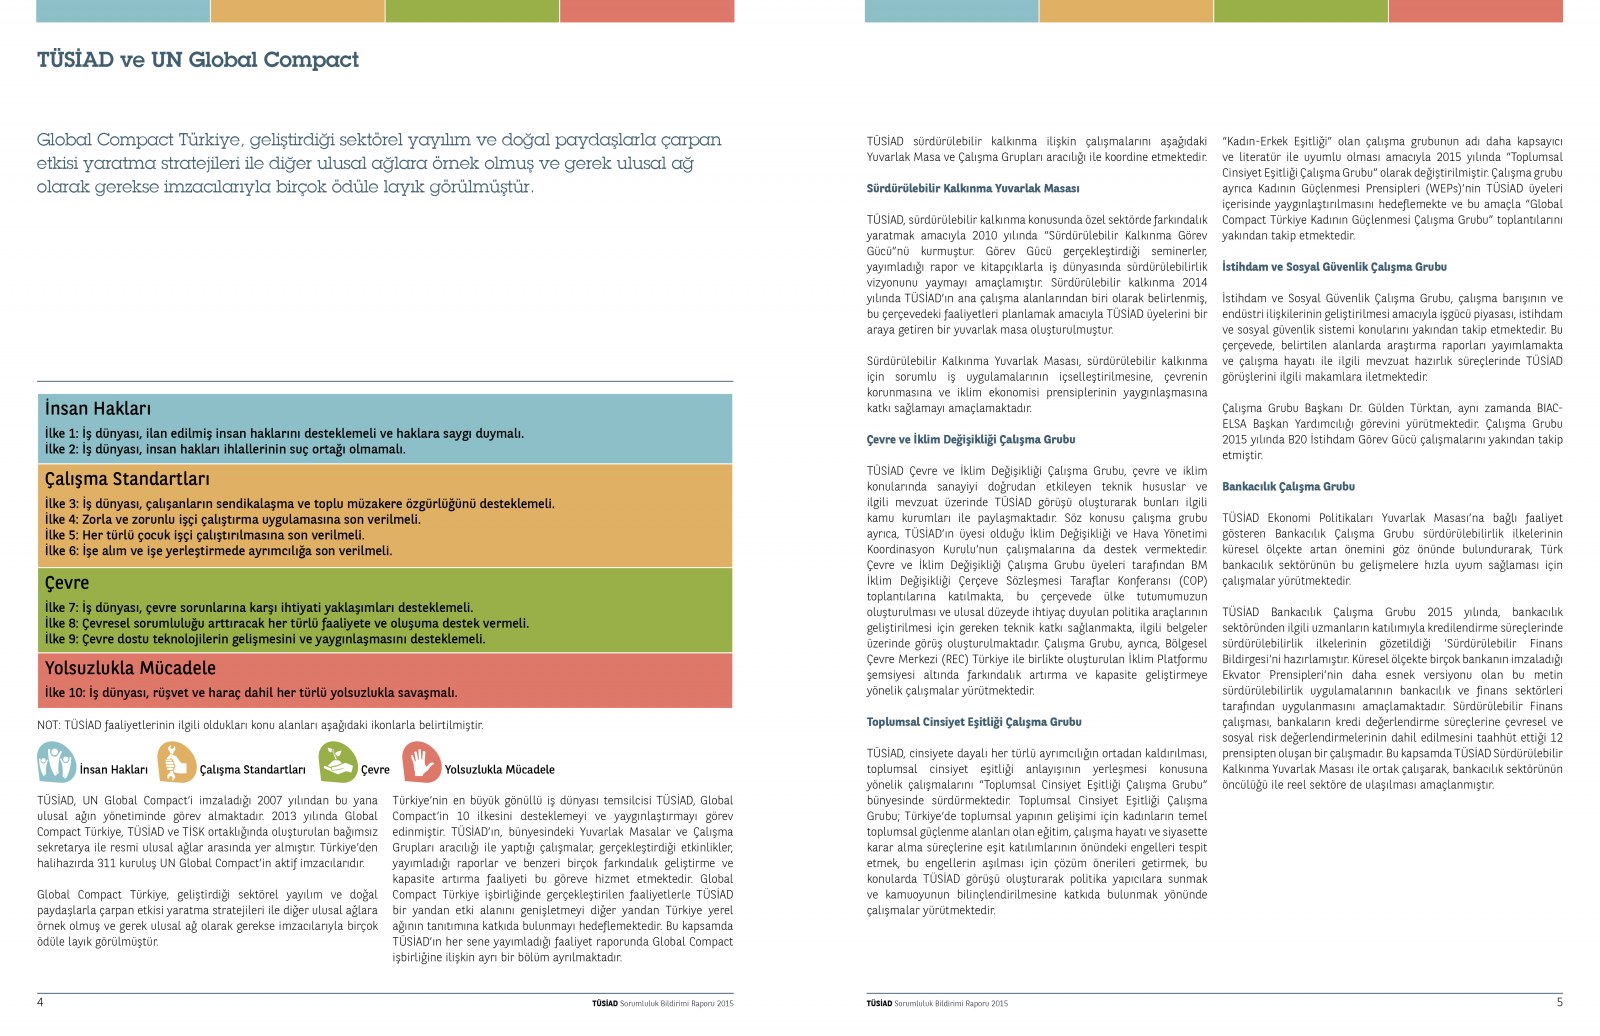 TÜSİAD / Sürdürülebilirlik Broşürü / Sustainability Brochure